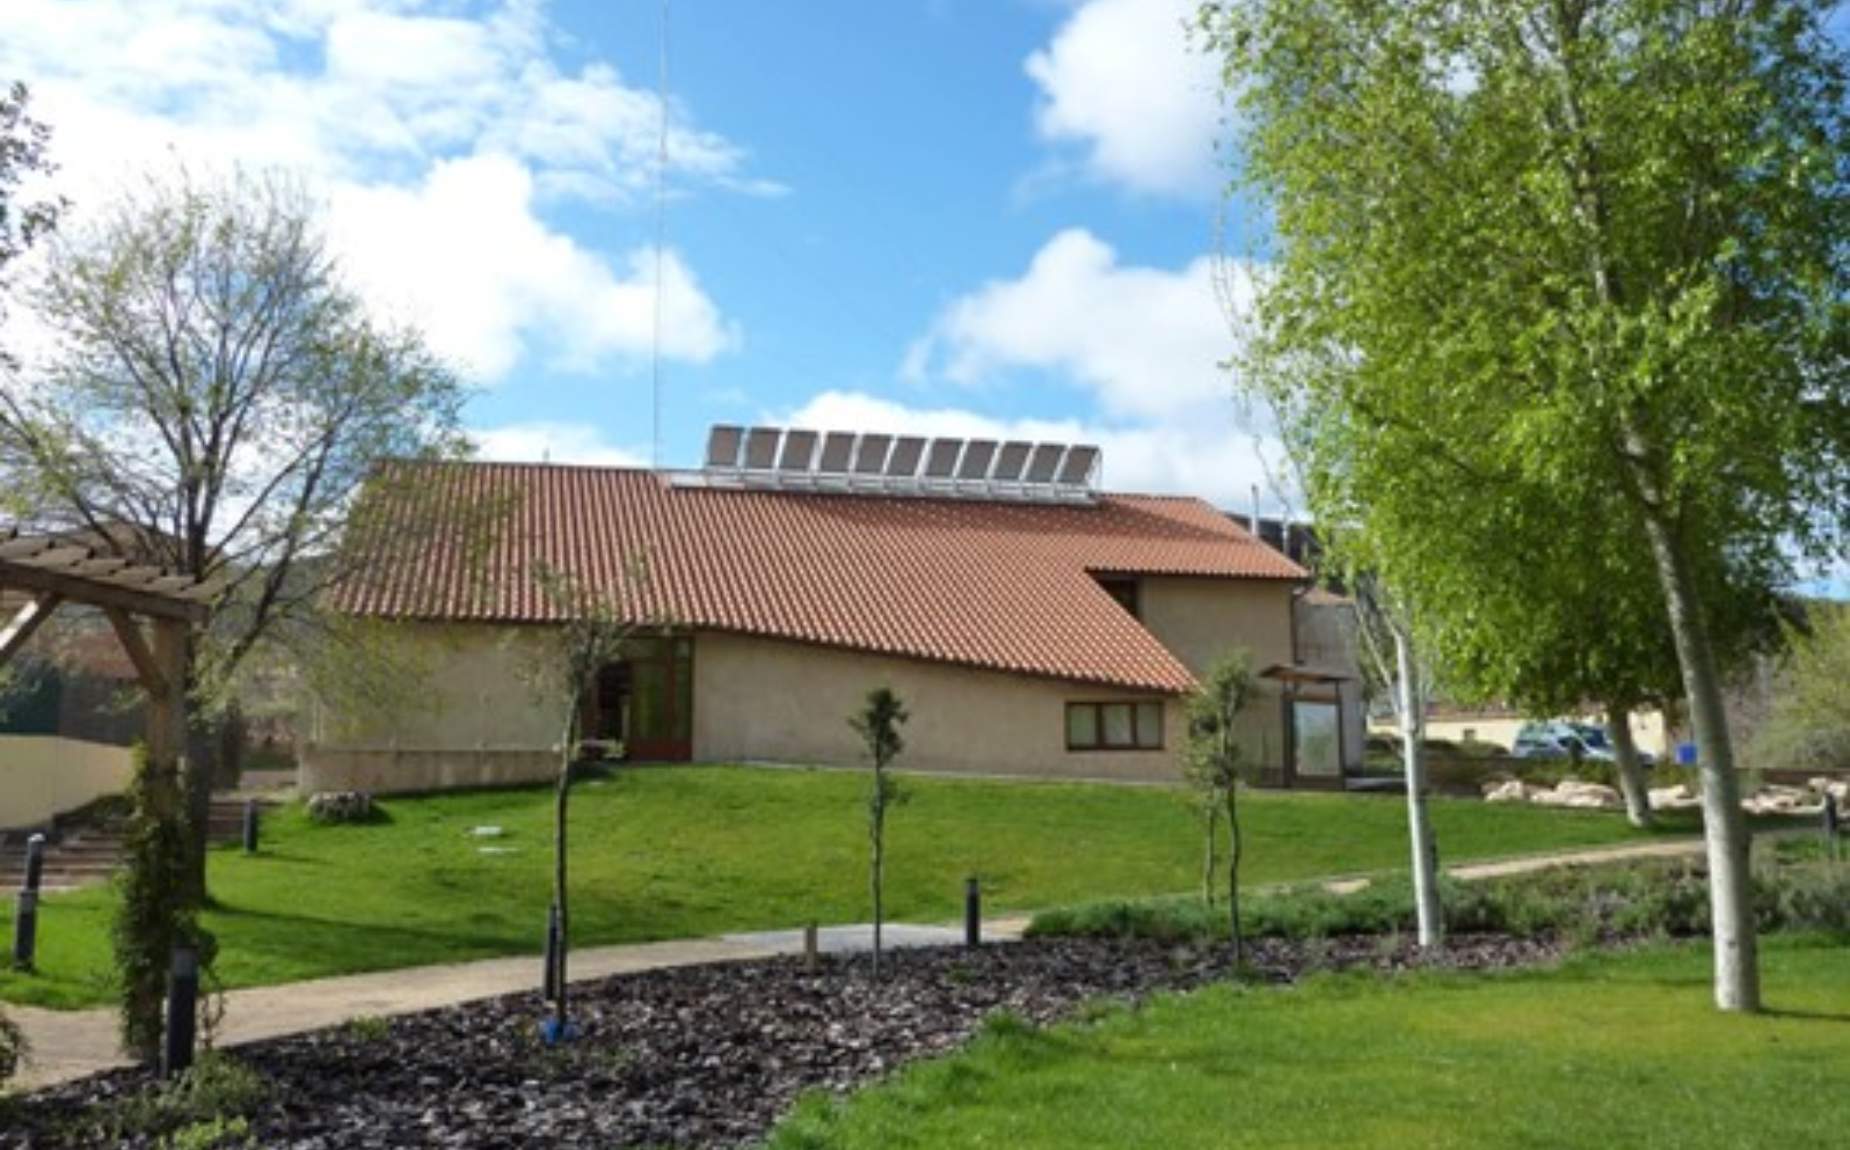 Una casa rural con placas solares en el tejado.